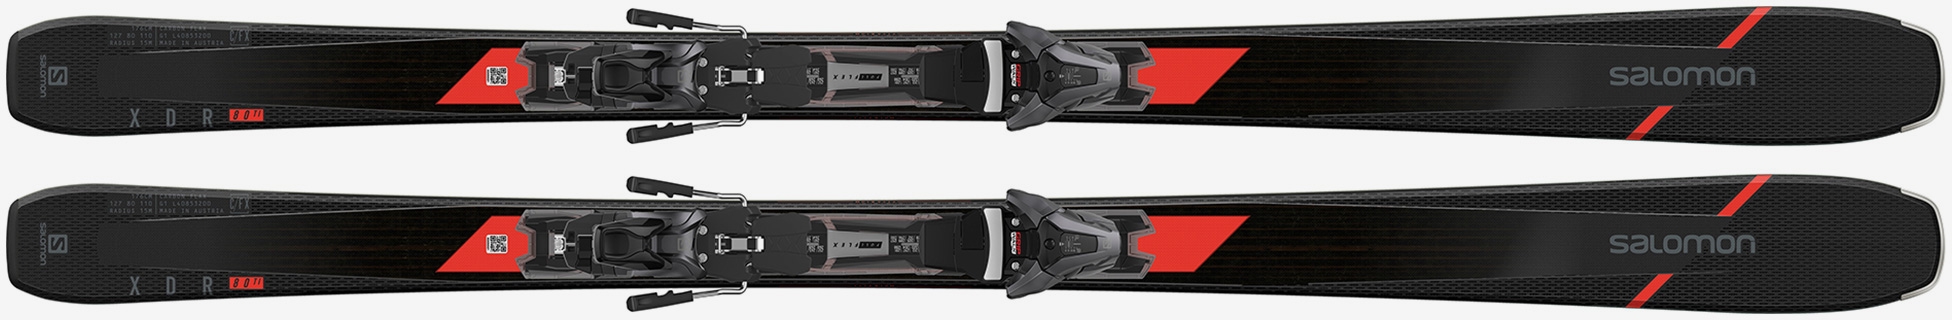 SALOMON E XDR 76 ST mit L10 GW L80 Bindung Carving Ski Collection 2020 NEU !!! 